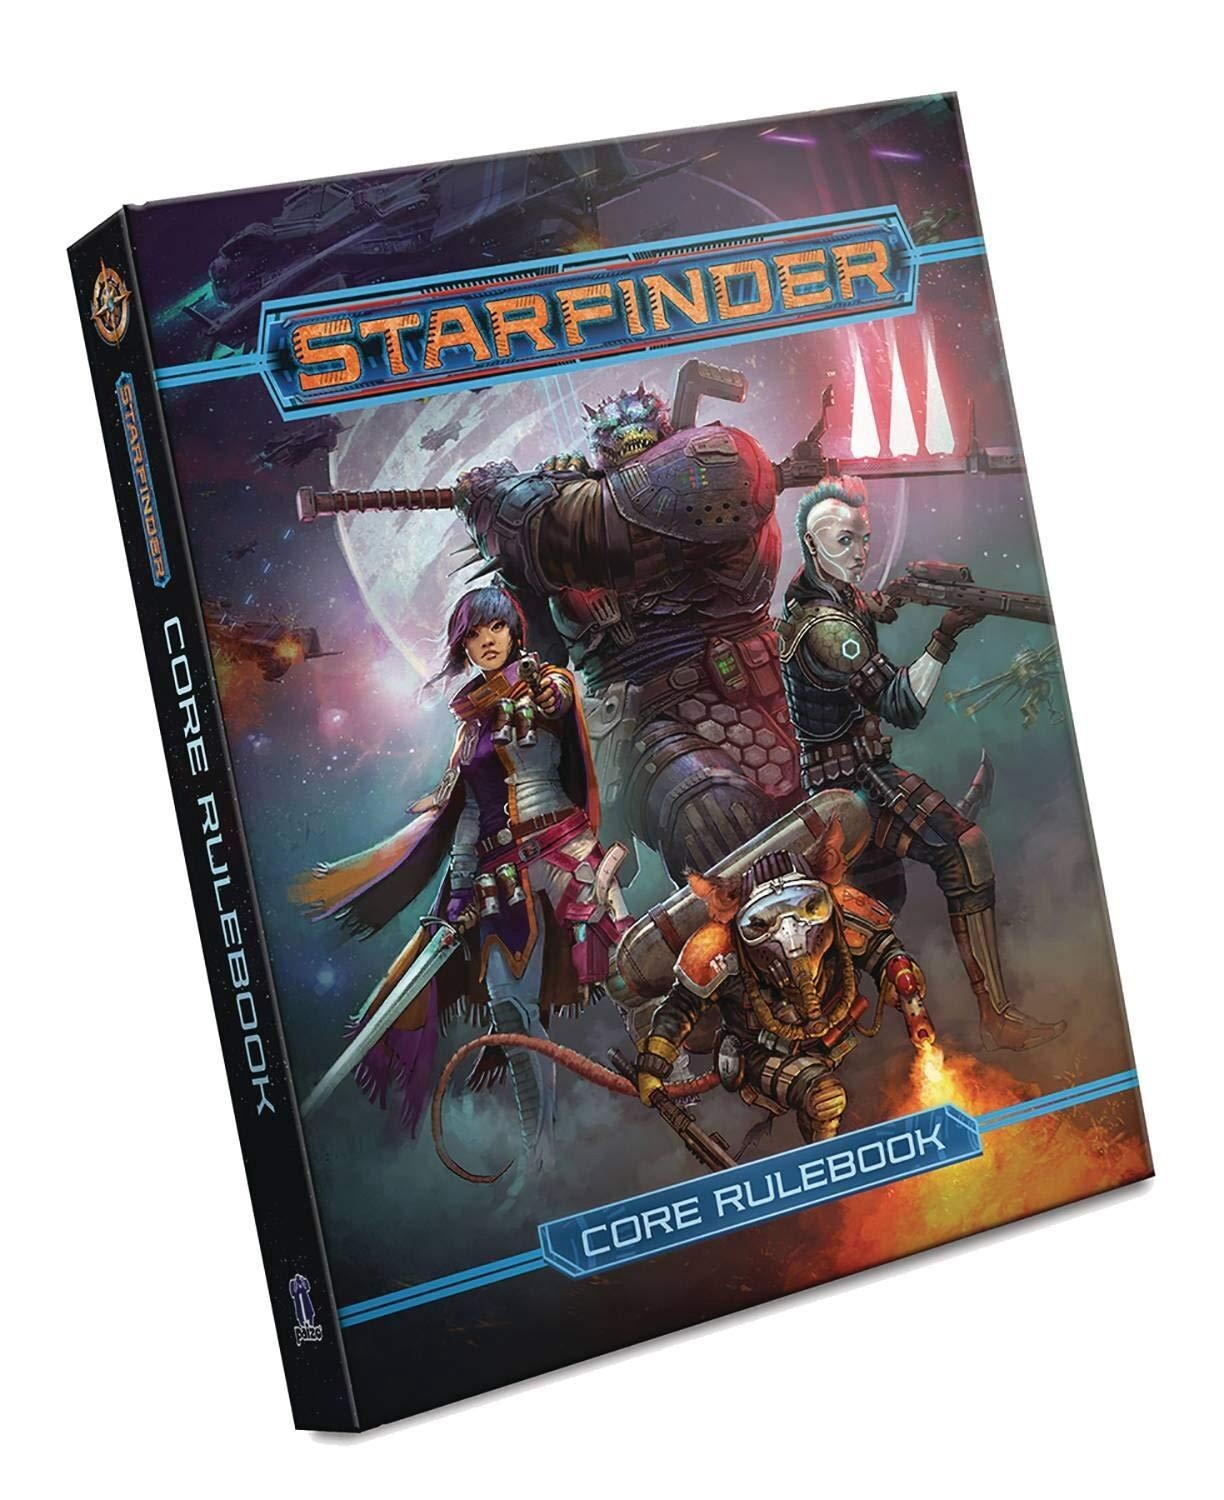 Starfinder: Core Rulebook